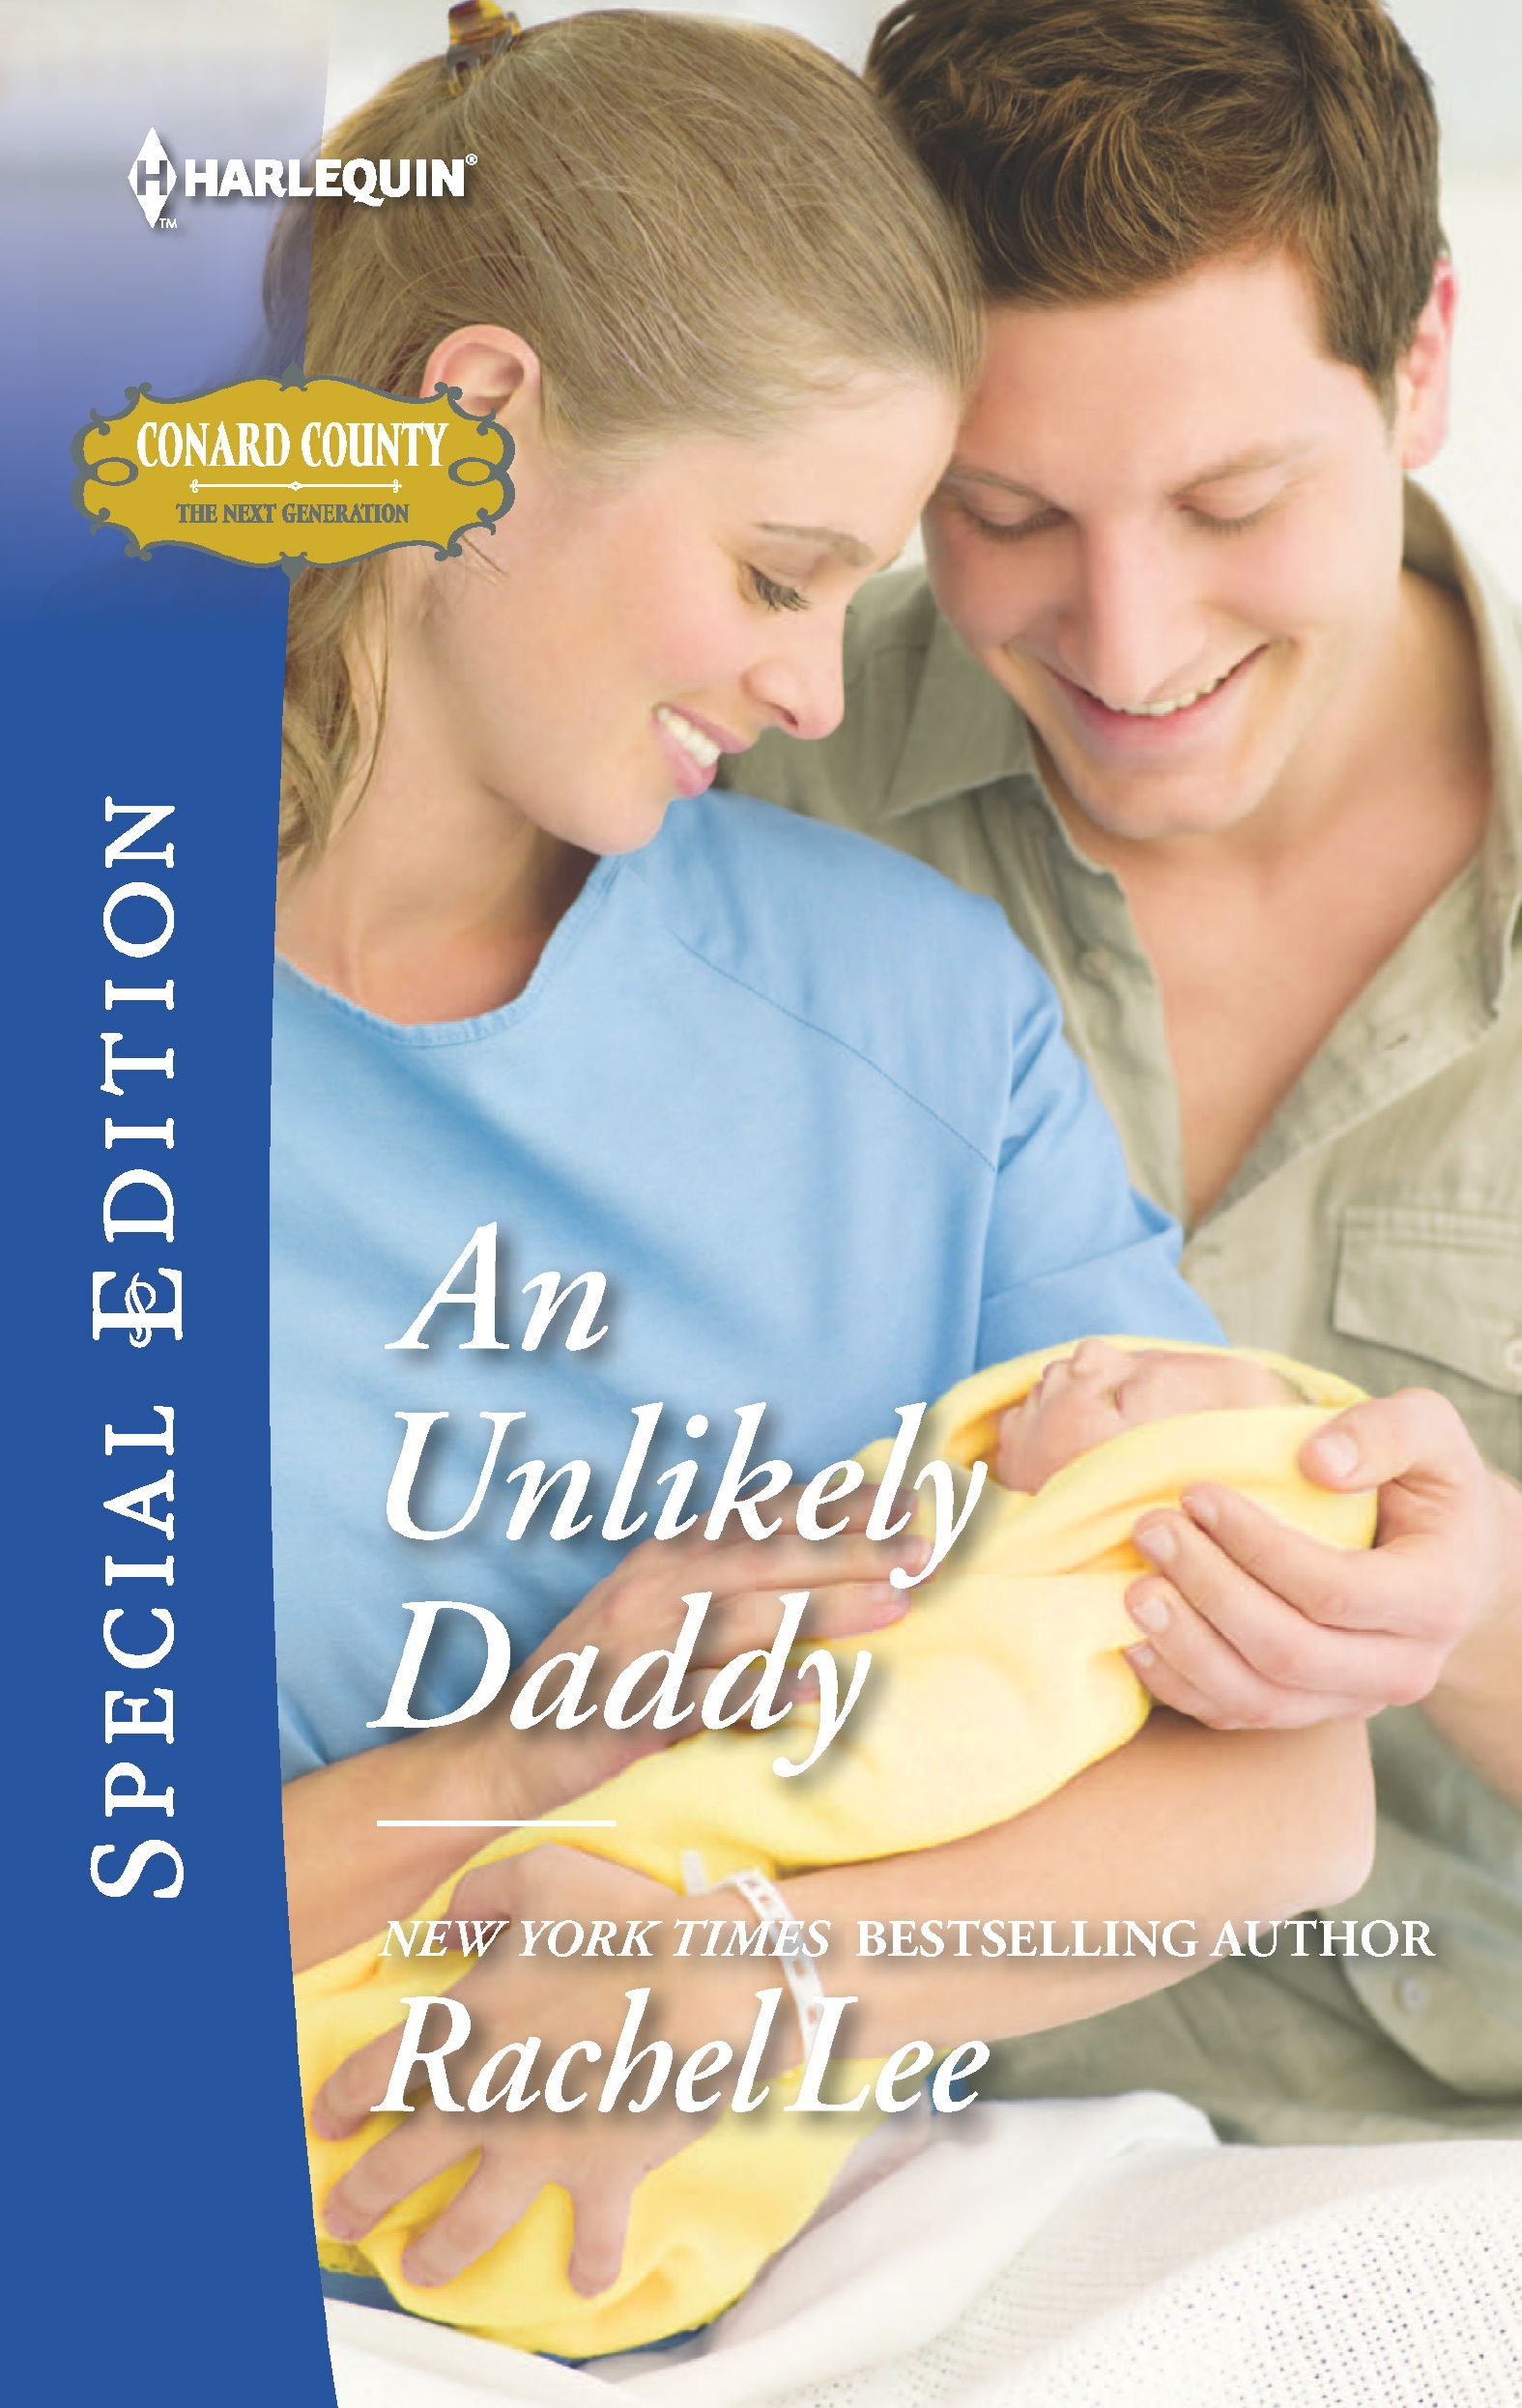 An Unlikely Daddy (2016) by Rachel Lee